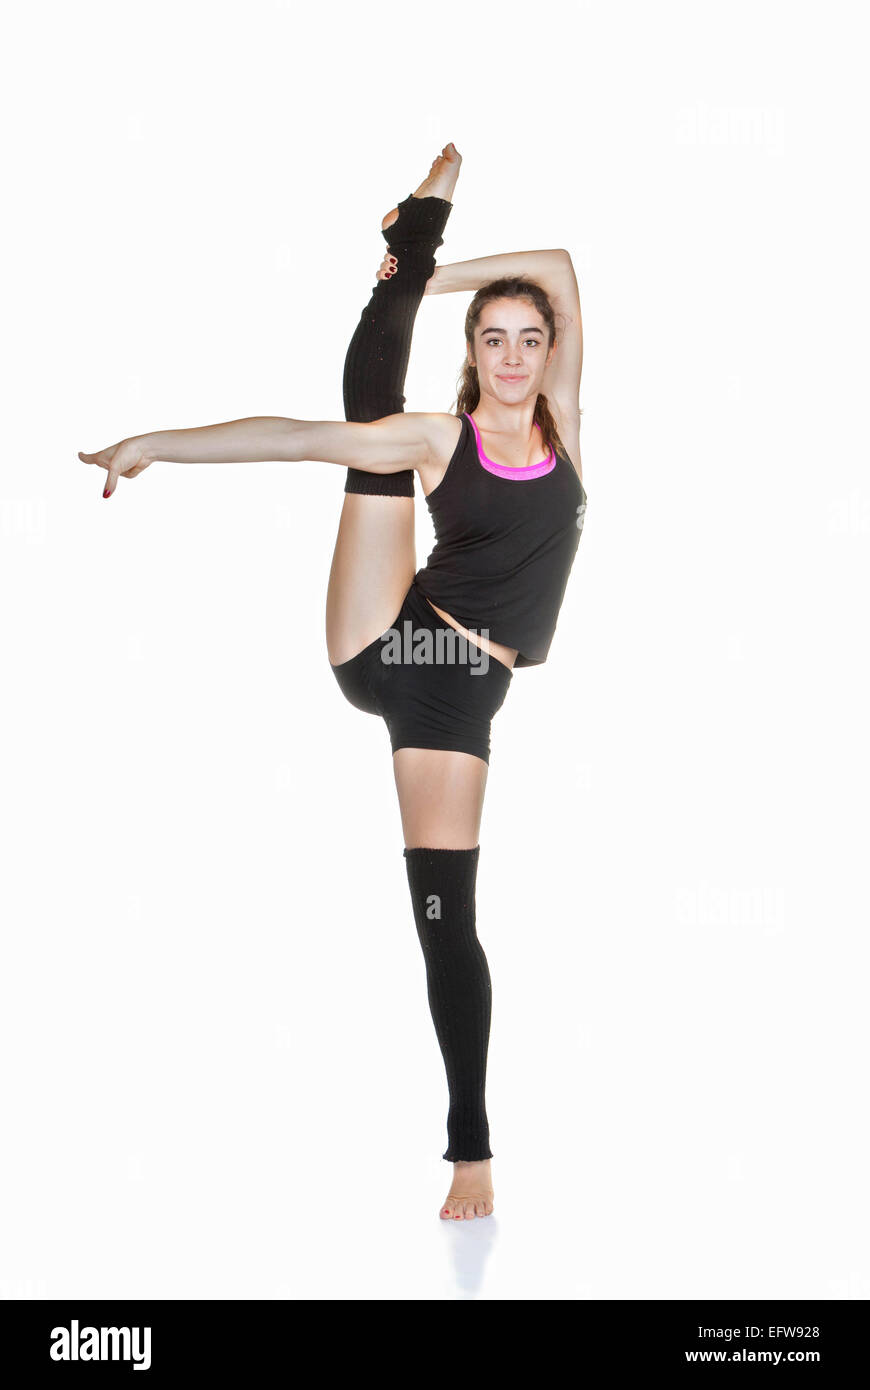 Flexible teen bailarina de ballet ejercicio de estiramiento Fotografía de  stock - Alamy